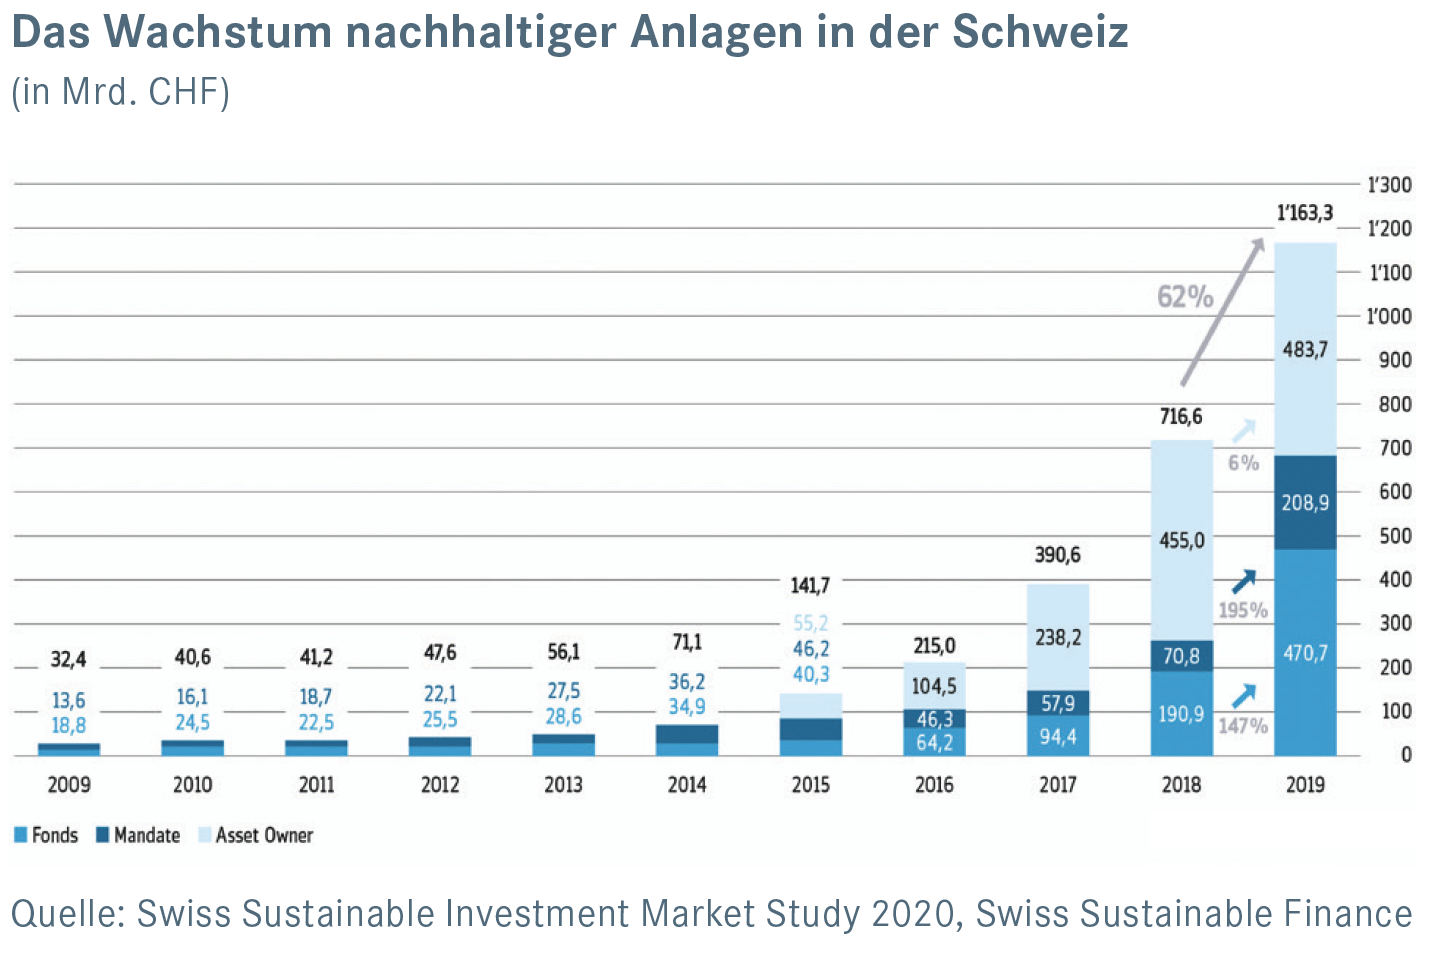 Das Wachstum nachhaltiger Anlagen in der Schweiz (in Mrd. CHF)